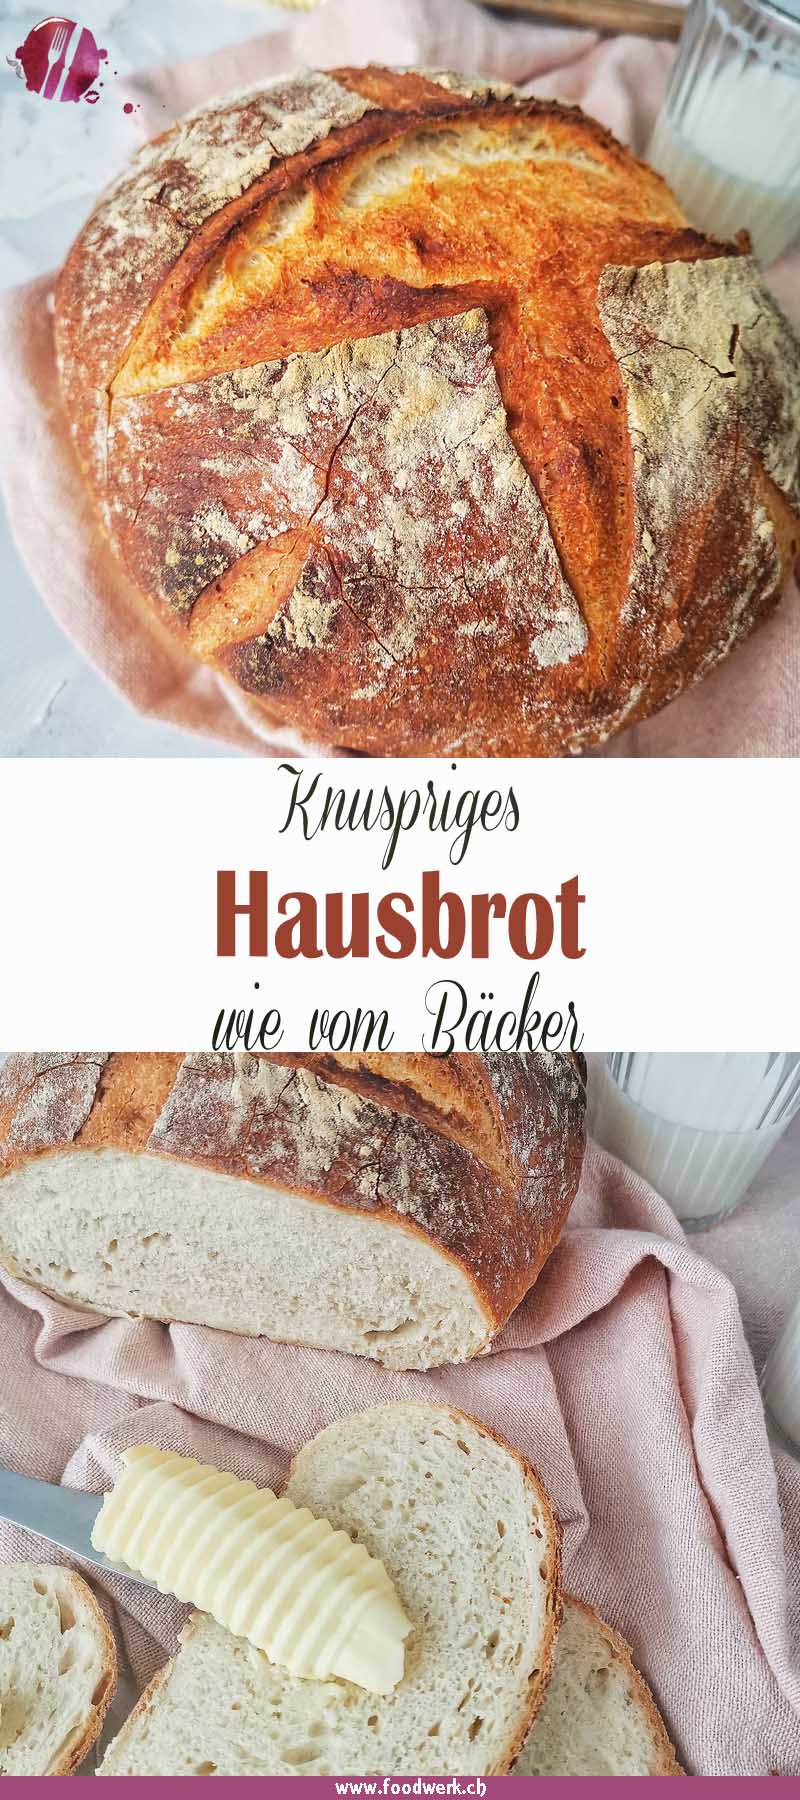 Herrlich knusprig : Einfaches Hausbrot wie vom Bäcker | Food-Blog ...